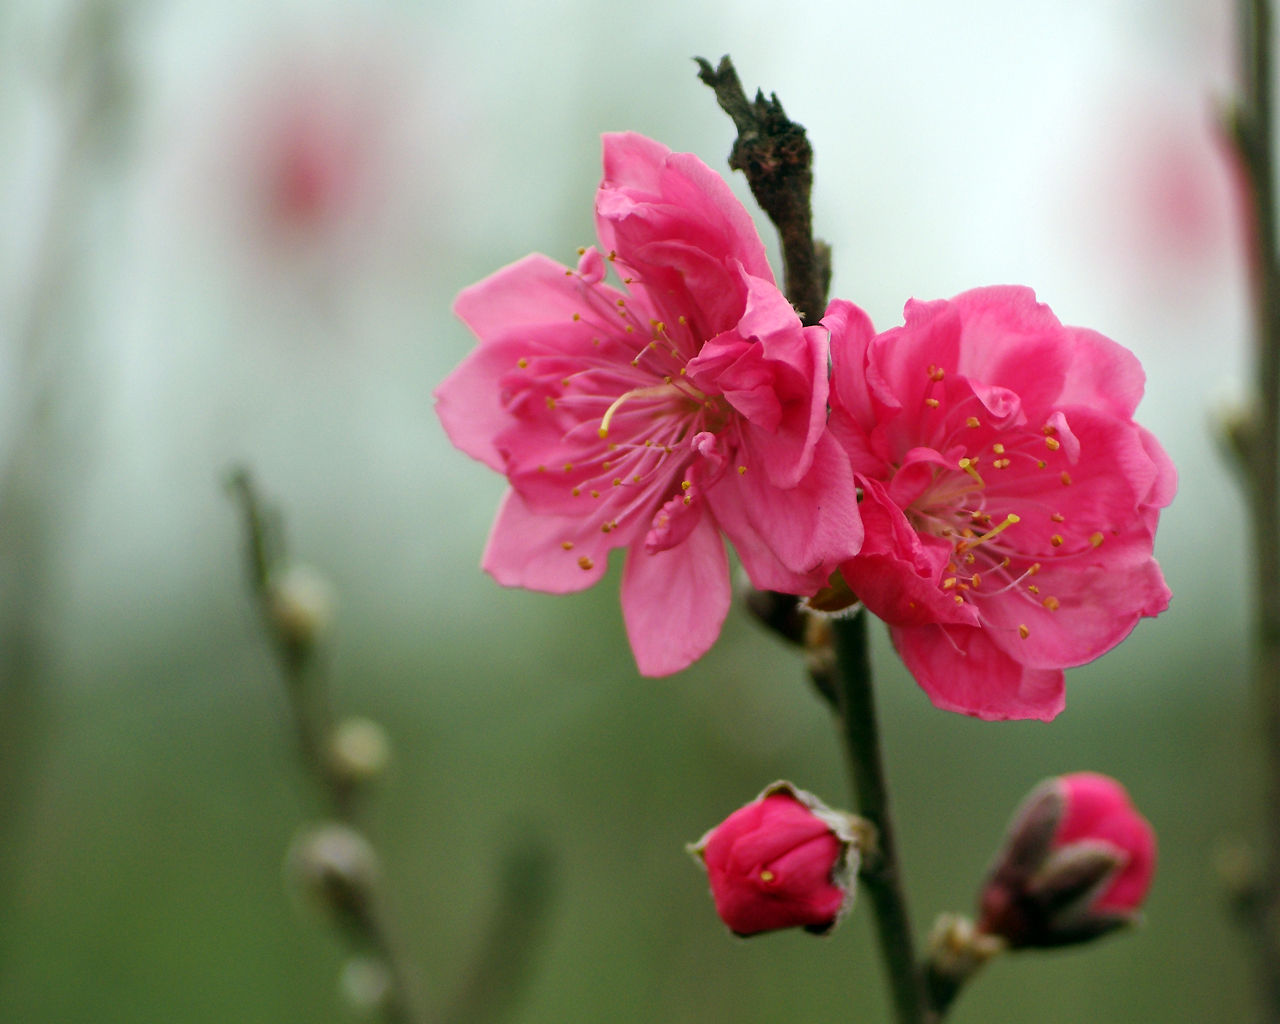 Hoa đào là biểu tượng của mùa Xuân tươi đẹp, mang trong mình tinh hoa của văn hóa truyền thống Việt Nam. Năm 2024 này, hoa đào được chăm sóc cẩn thận, đón nhận nhiều sự quan tâm của mọi người. Hãy cùng đắm chìm trong cảnh sắc hoa đào rực rỡ, như một lời chào đón một năm mới đầy hứa hẹn!